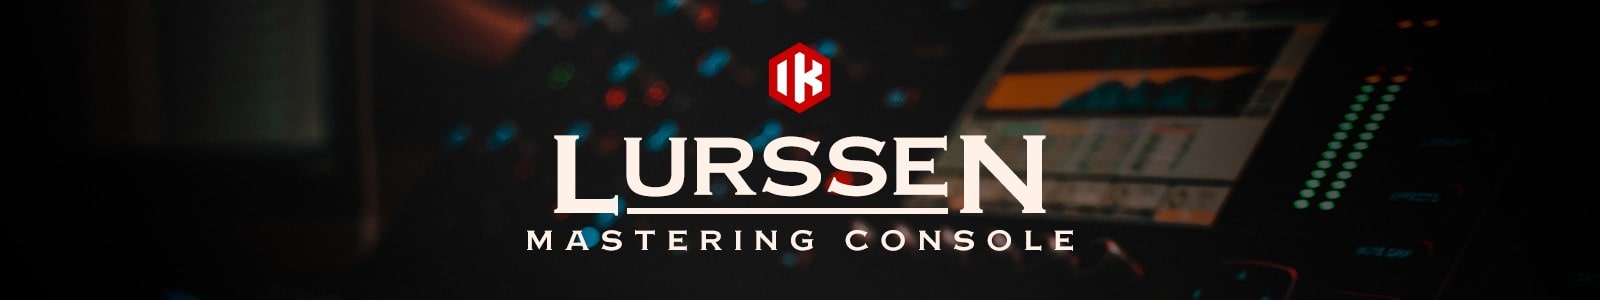 Lurssen Mastering Console by IK Multimedia